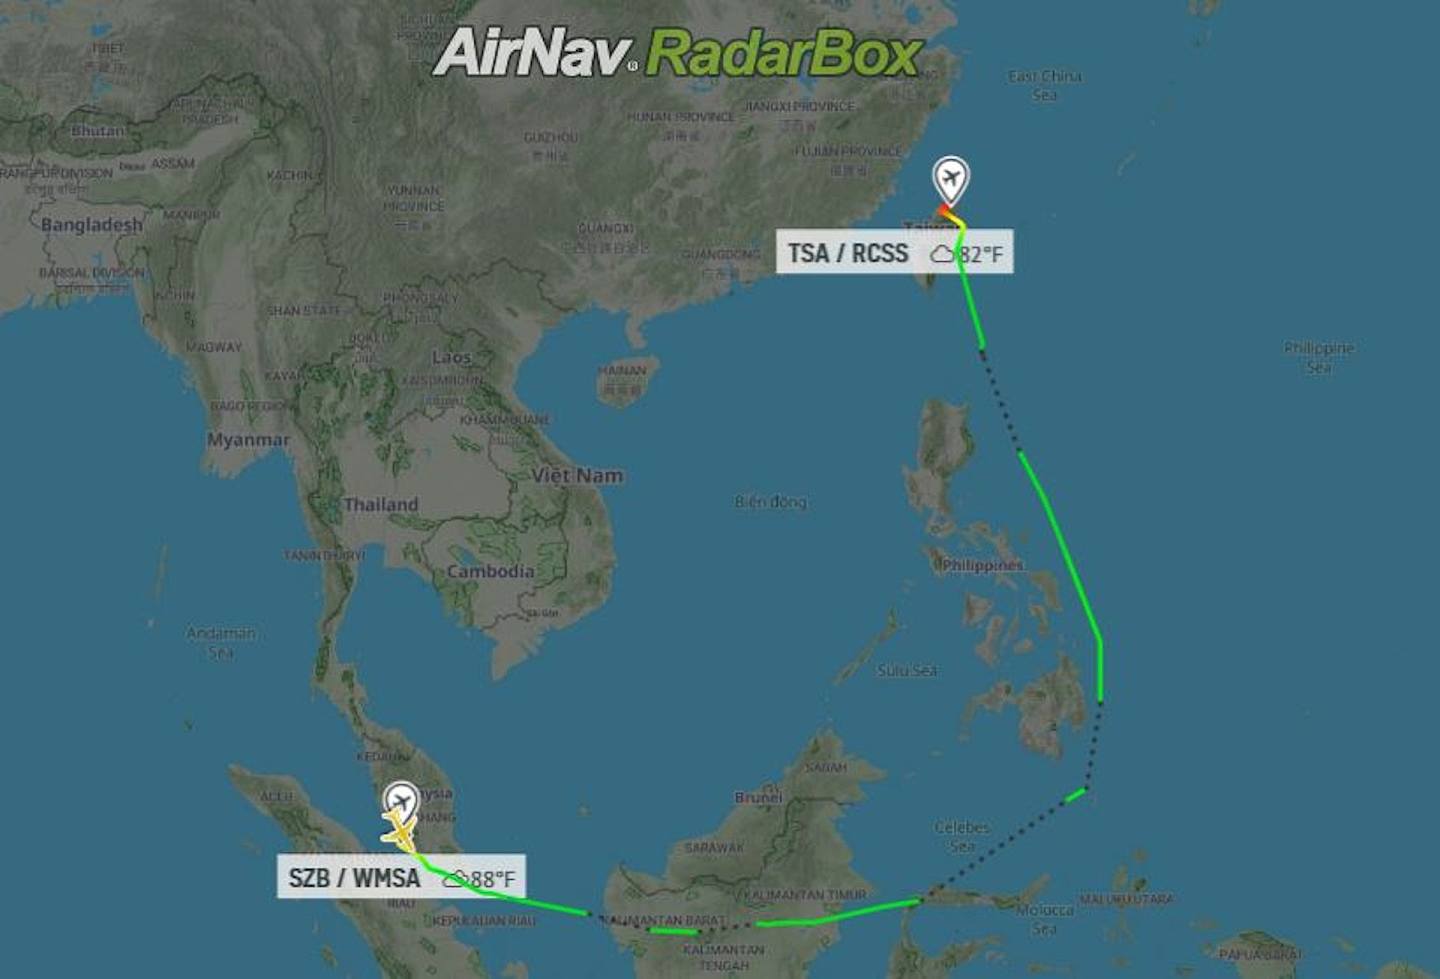 佩洛西访台：根据RadarBox网站，佩洛西乘坐的SPAR19专机8月2日从吉隆坡出发后，先向东飞行，穿过印尼上空后向北行，绕道菲律宾再往台湾，飞行时间为7小时1分钟（RadarBox网站截图）